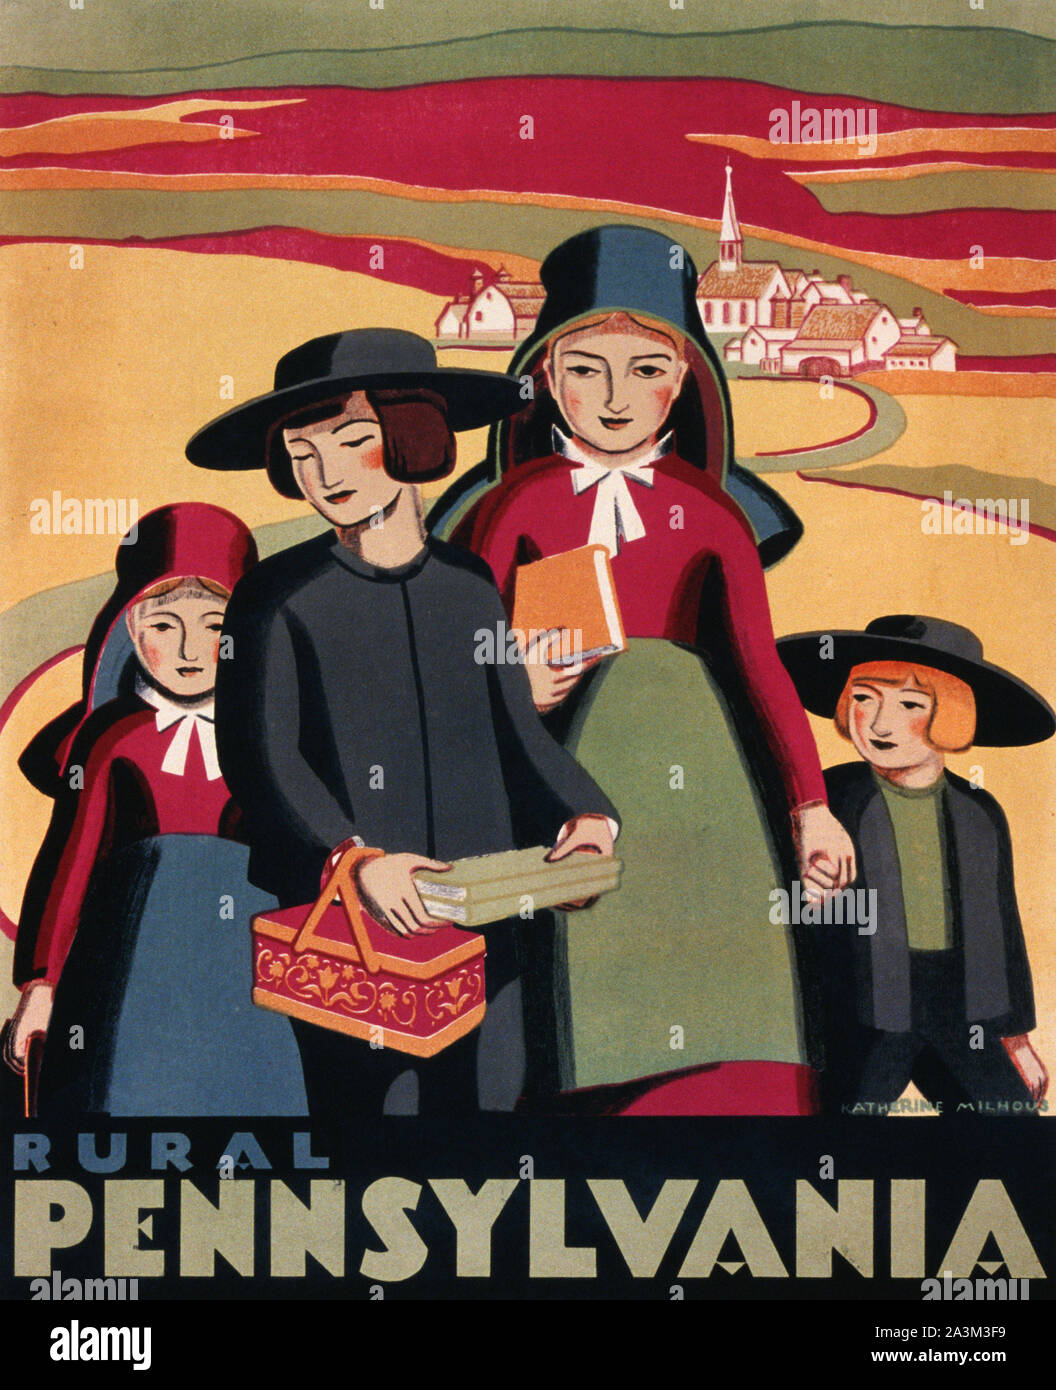 La Pennsylvanie rurale - les progrès réalisés dans le travail de l'administration fédérale - Projet d'Art - affiche 1938 Banque D'Images